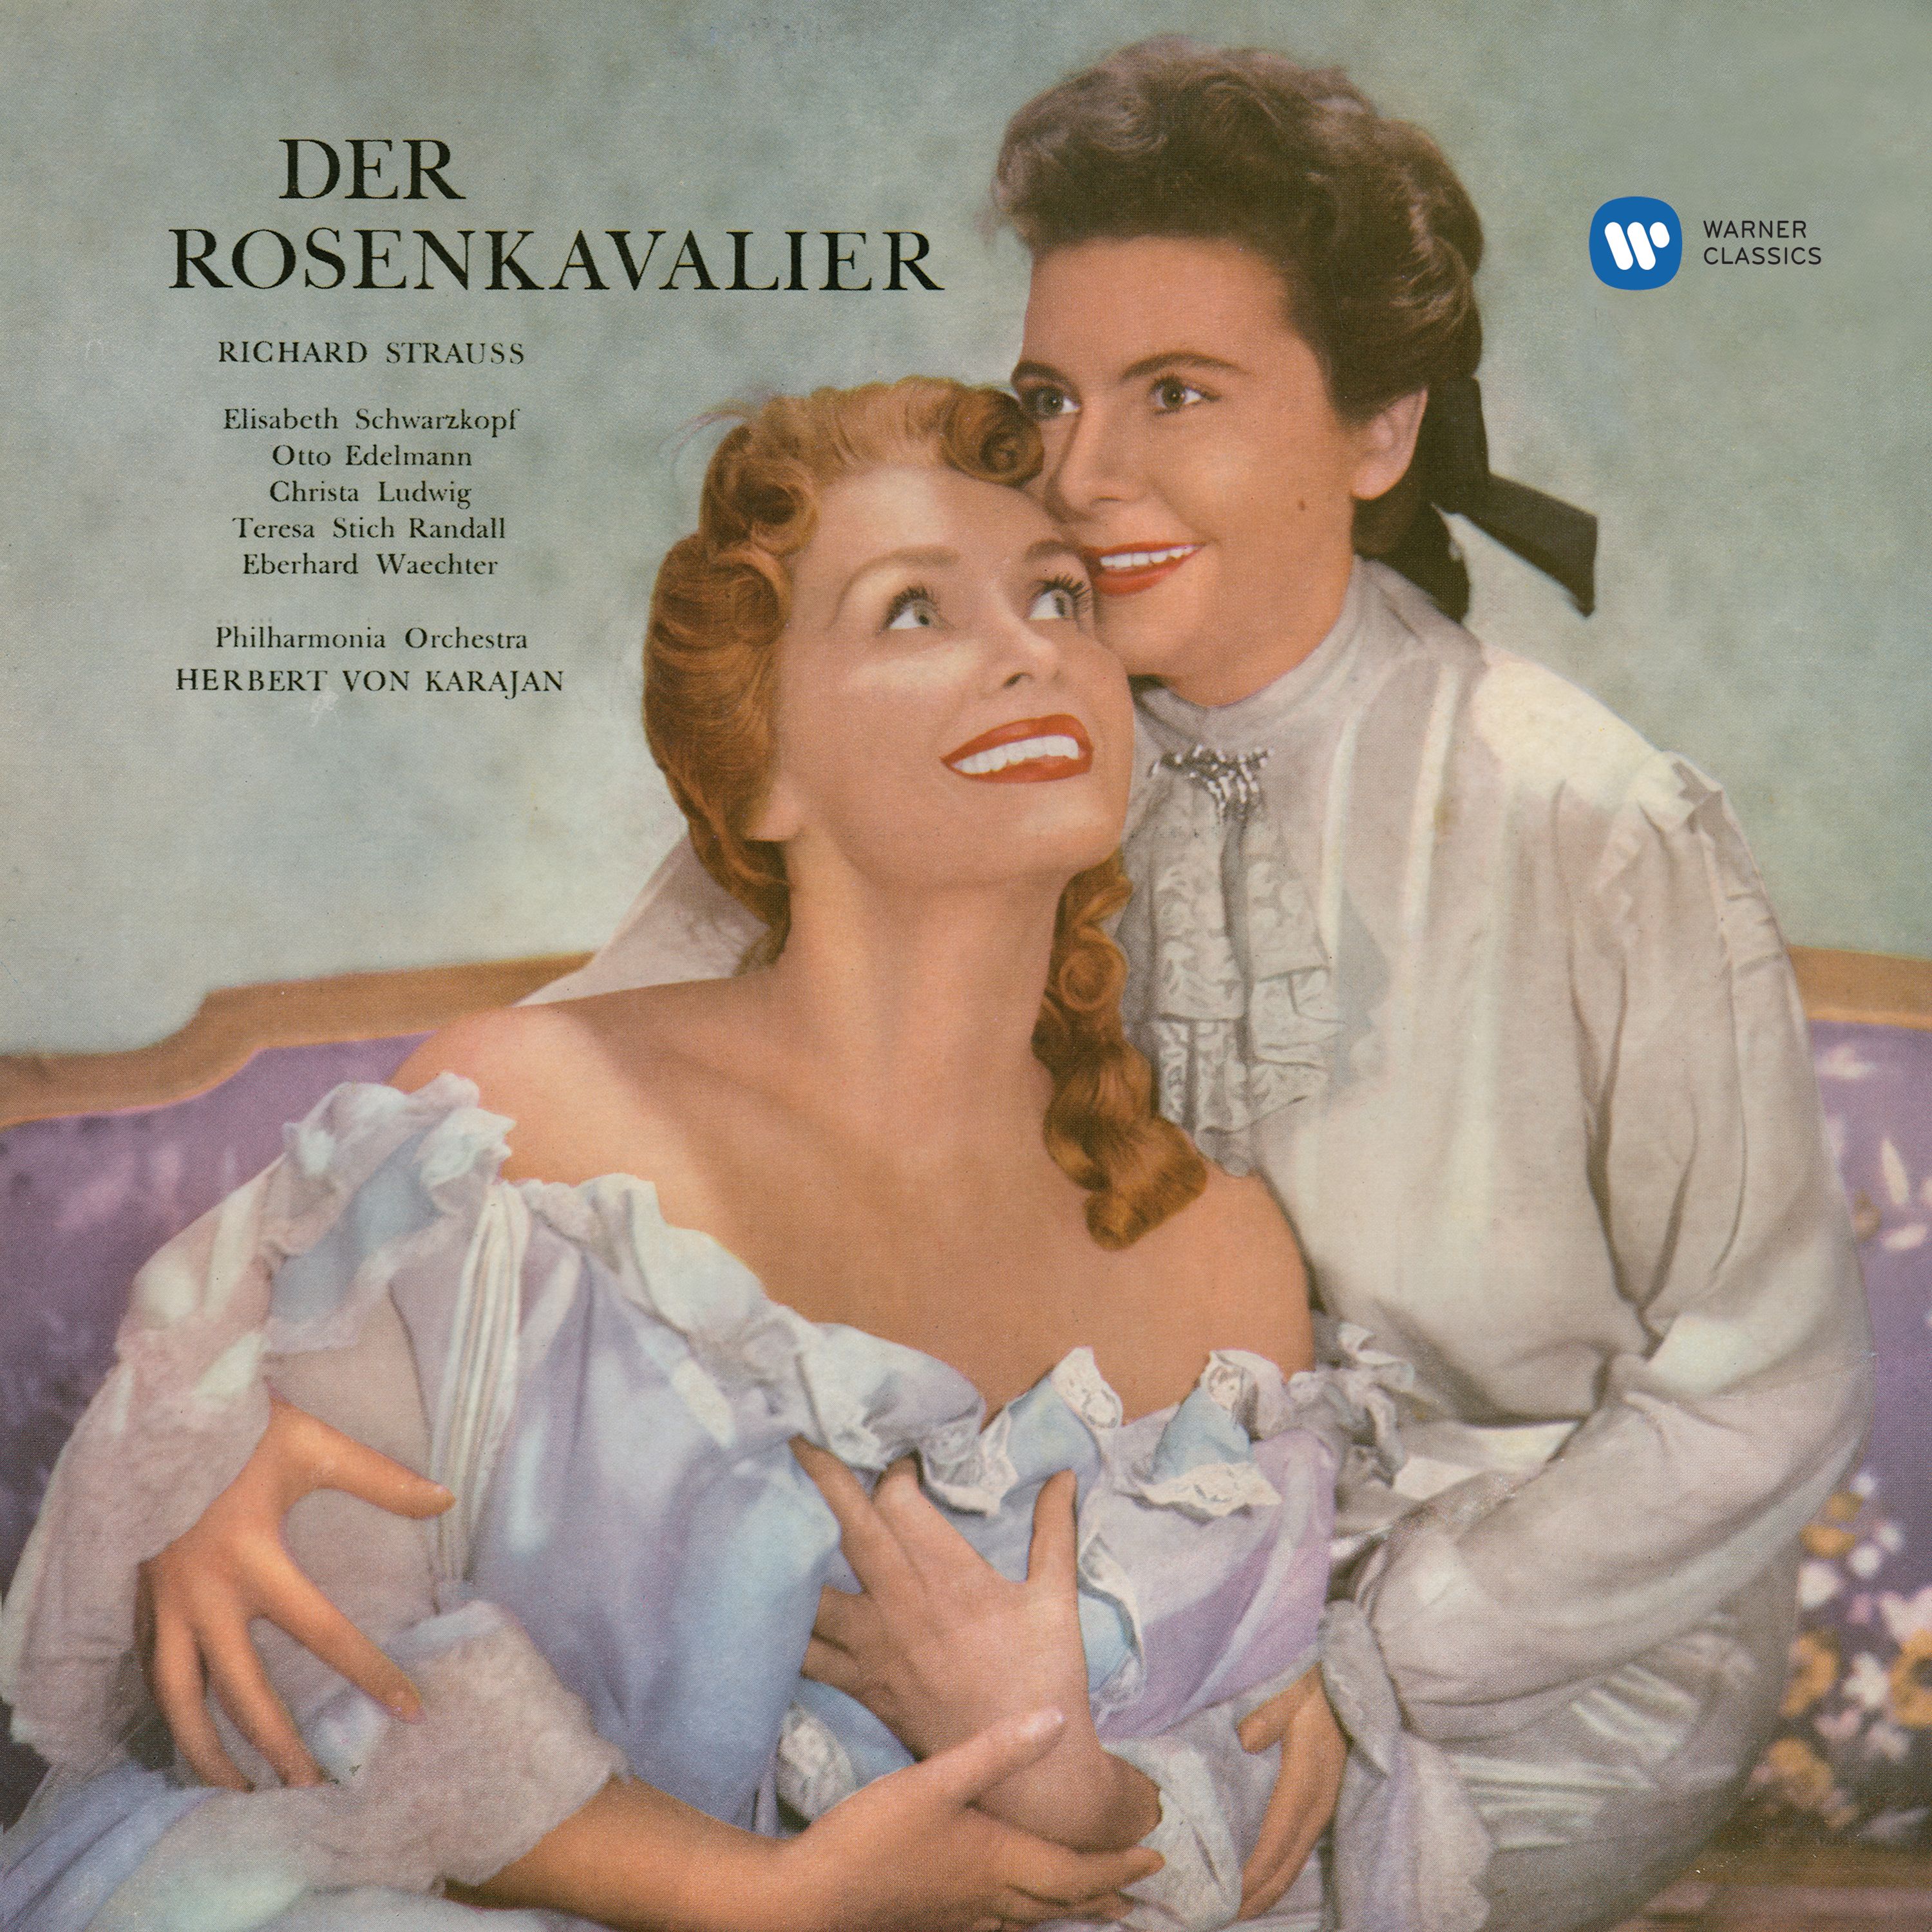 Der Rosenkavalier, Op. 59, Act 2: "Da lieg' ich!" (Ochs, Lerchenauischen)